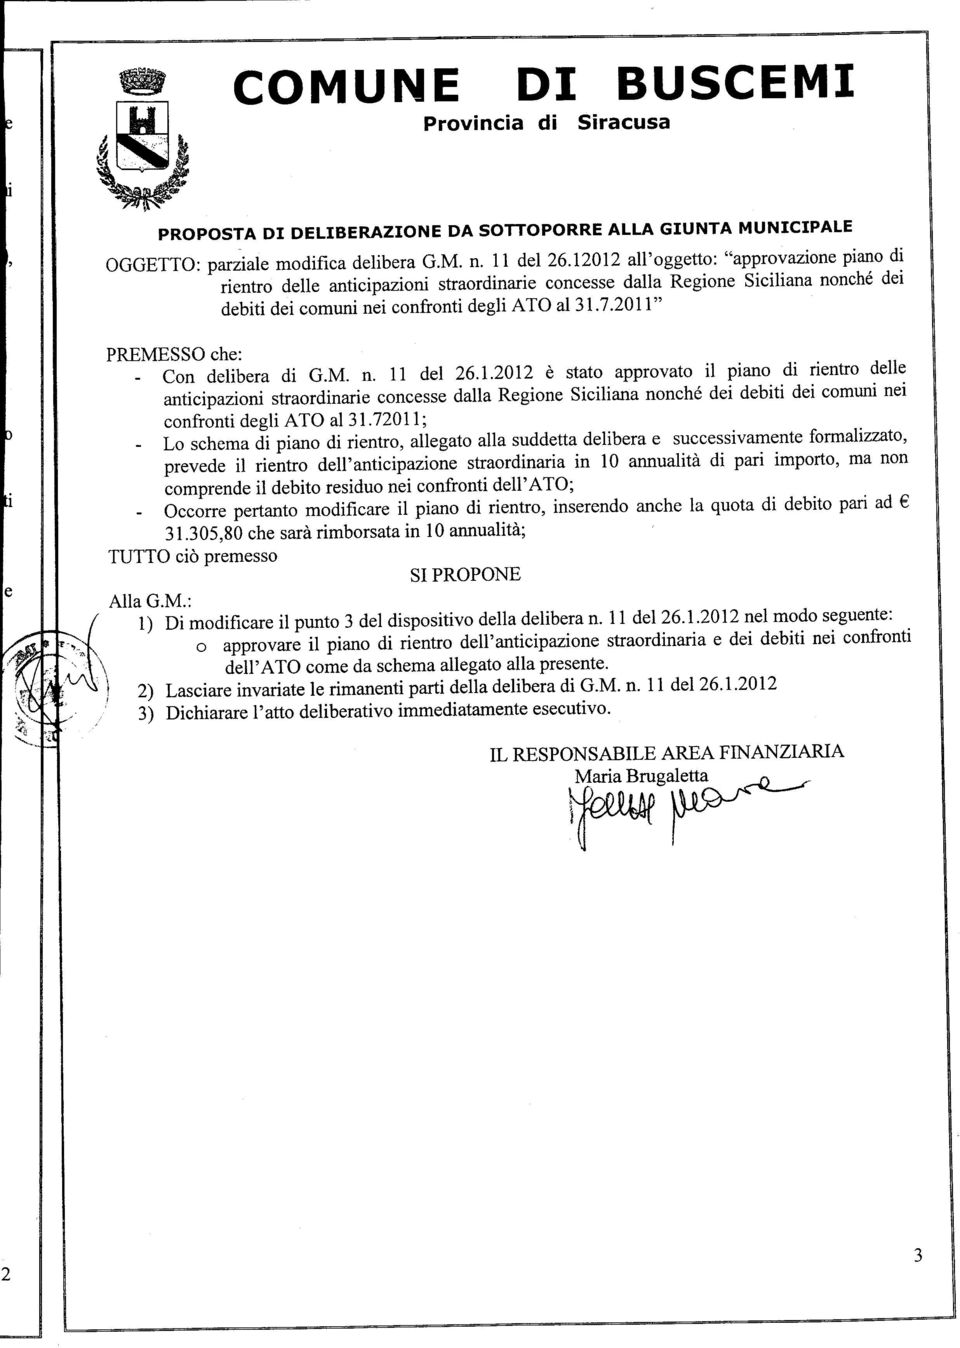 - Con delibera di G.M. n. 11 del 26.1.2012 è stato approvato il piano di rientro delle anticipazioni straordinarie concesse dalla Regione Siciliana nonché dei debiti dei comuni nei confronti degli ATO al31.